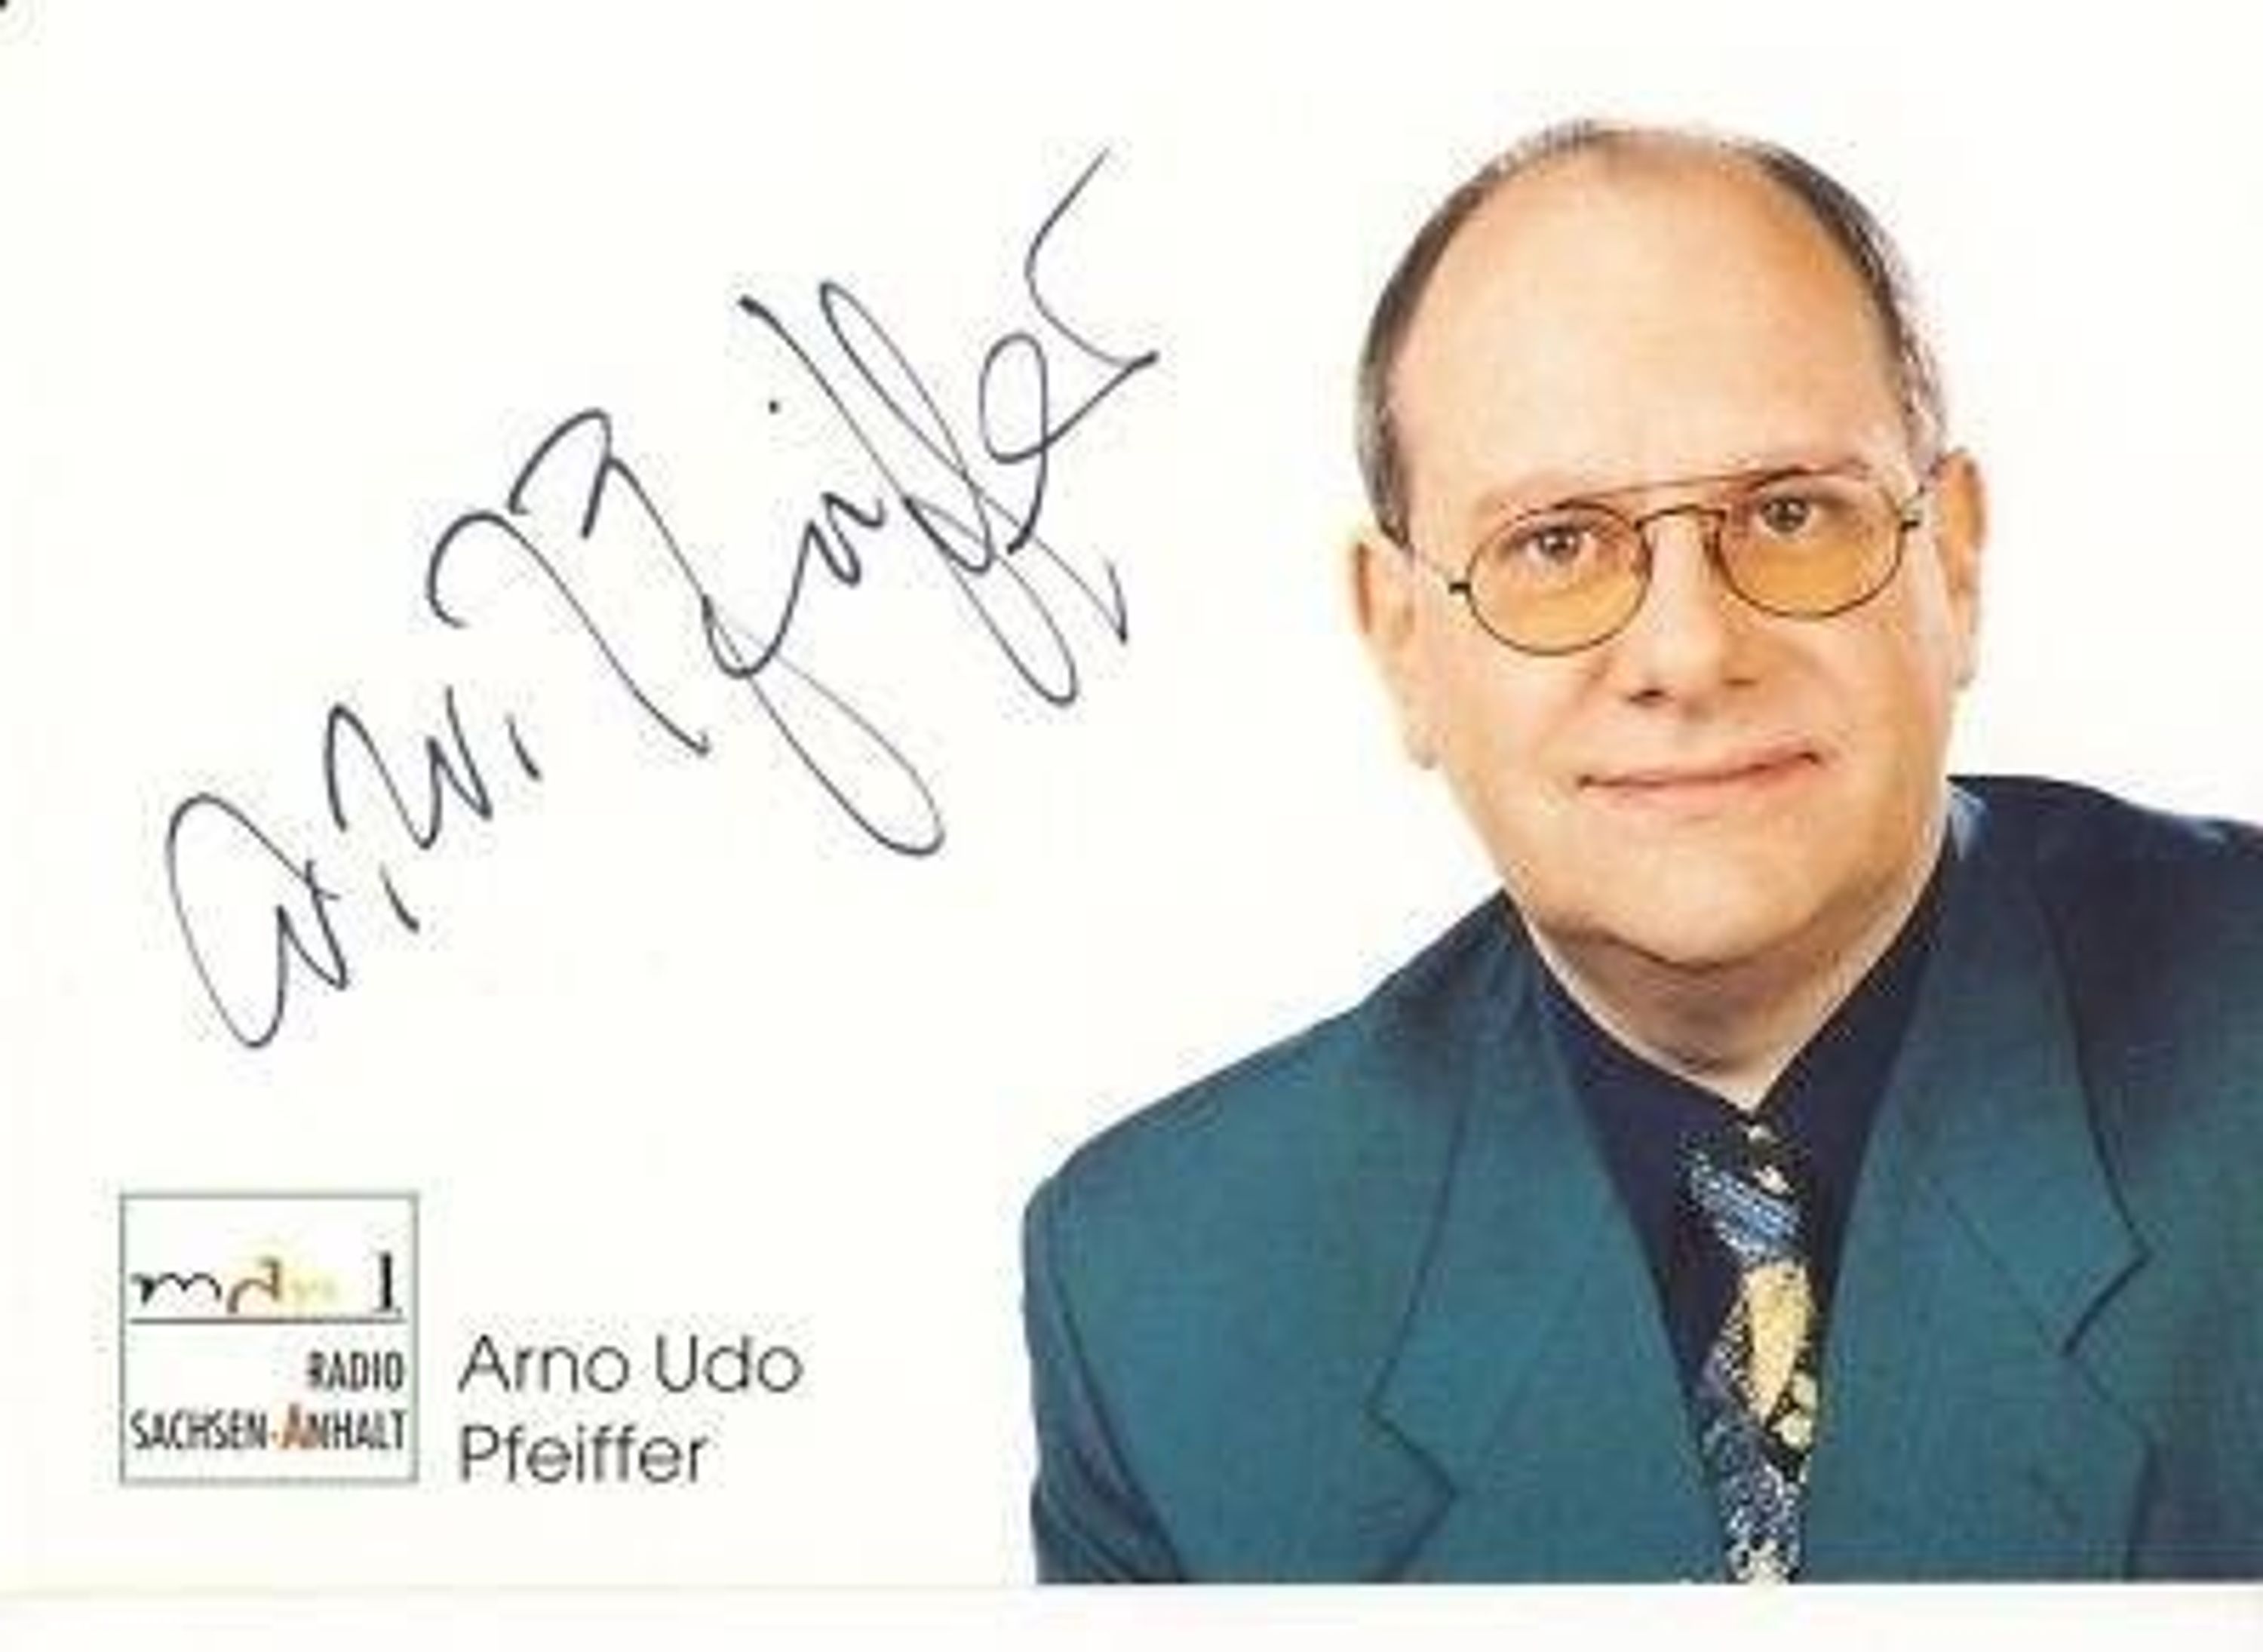 Arno <b>Udo Pfeiffer</b> MDR AK TOP Original Signiert + 26357 gebraucht kaufen bei ... - 28648357